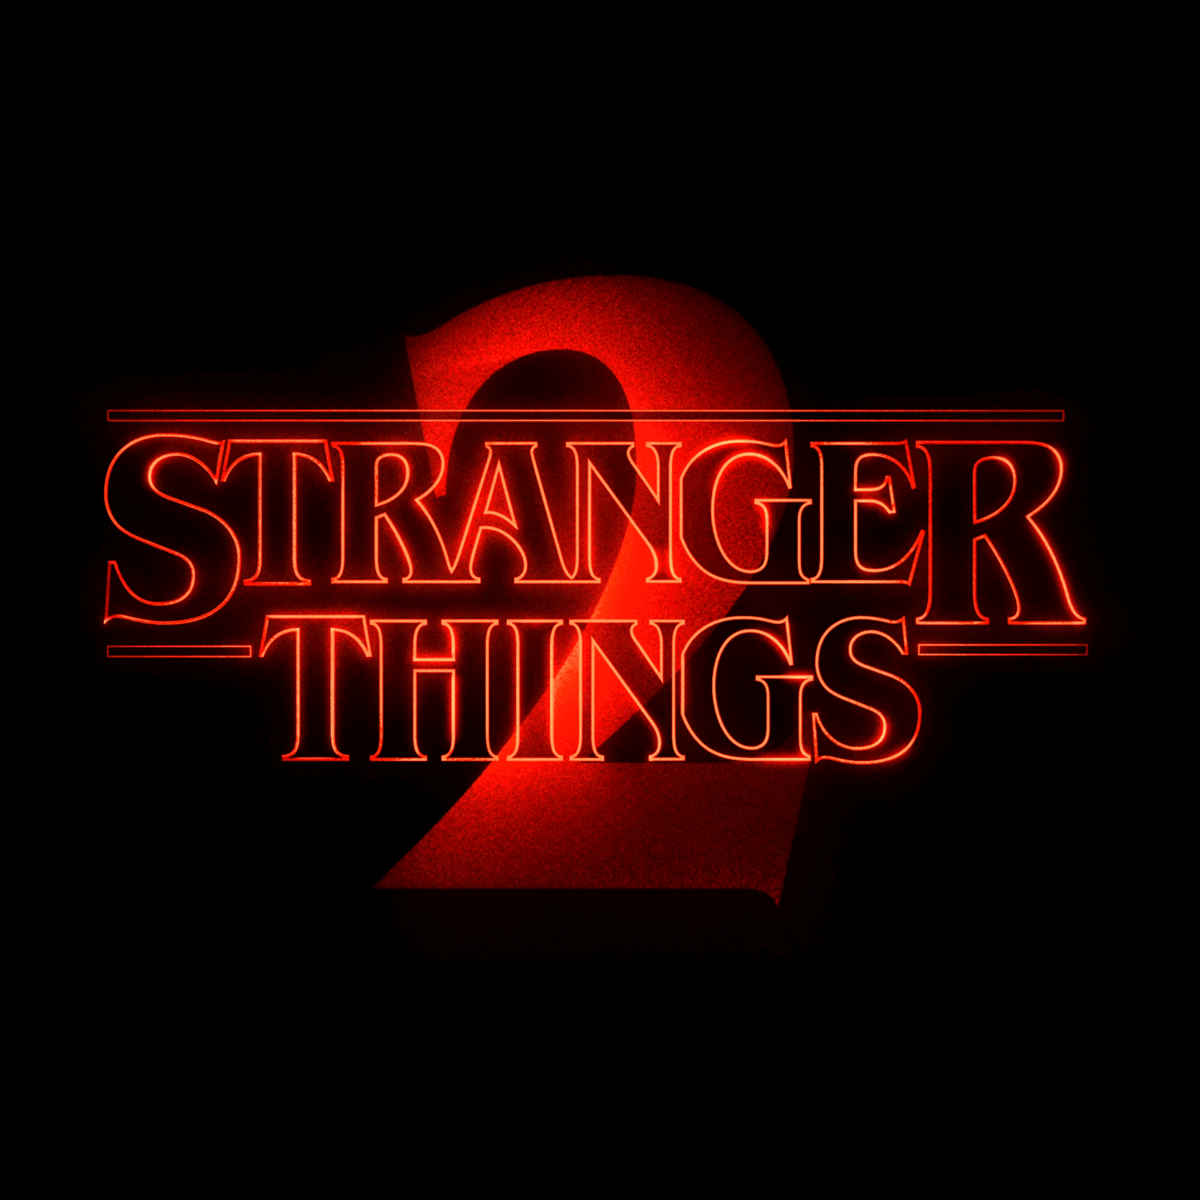 Stranger Things season 2 logo